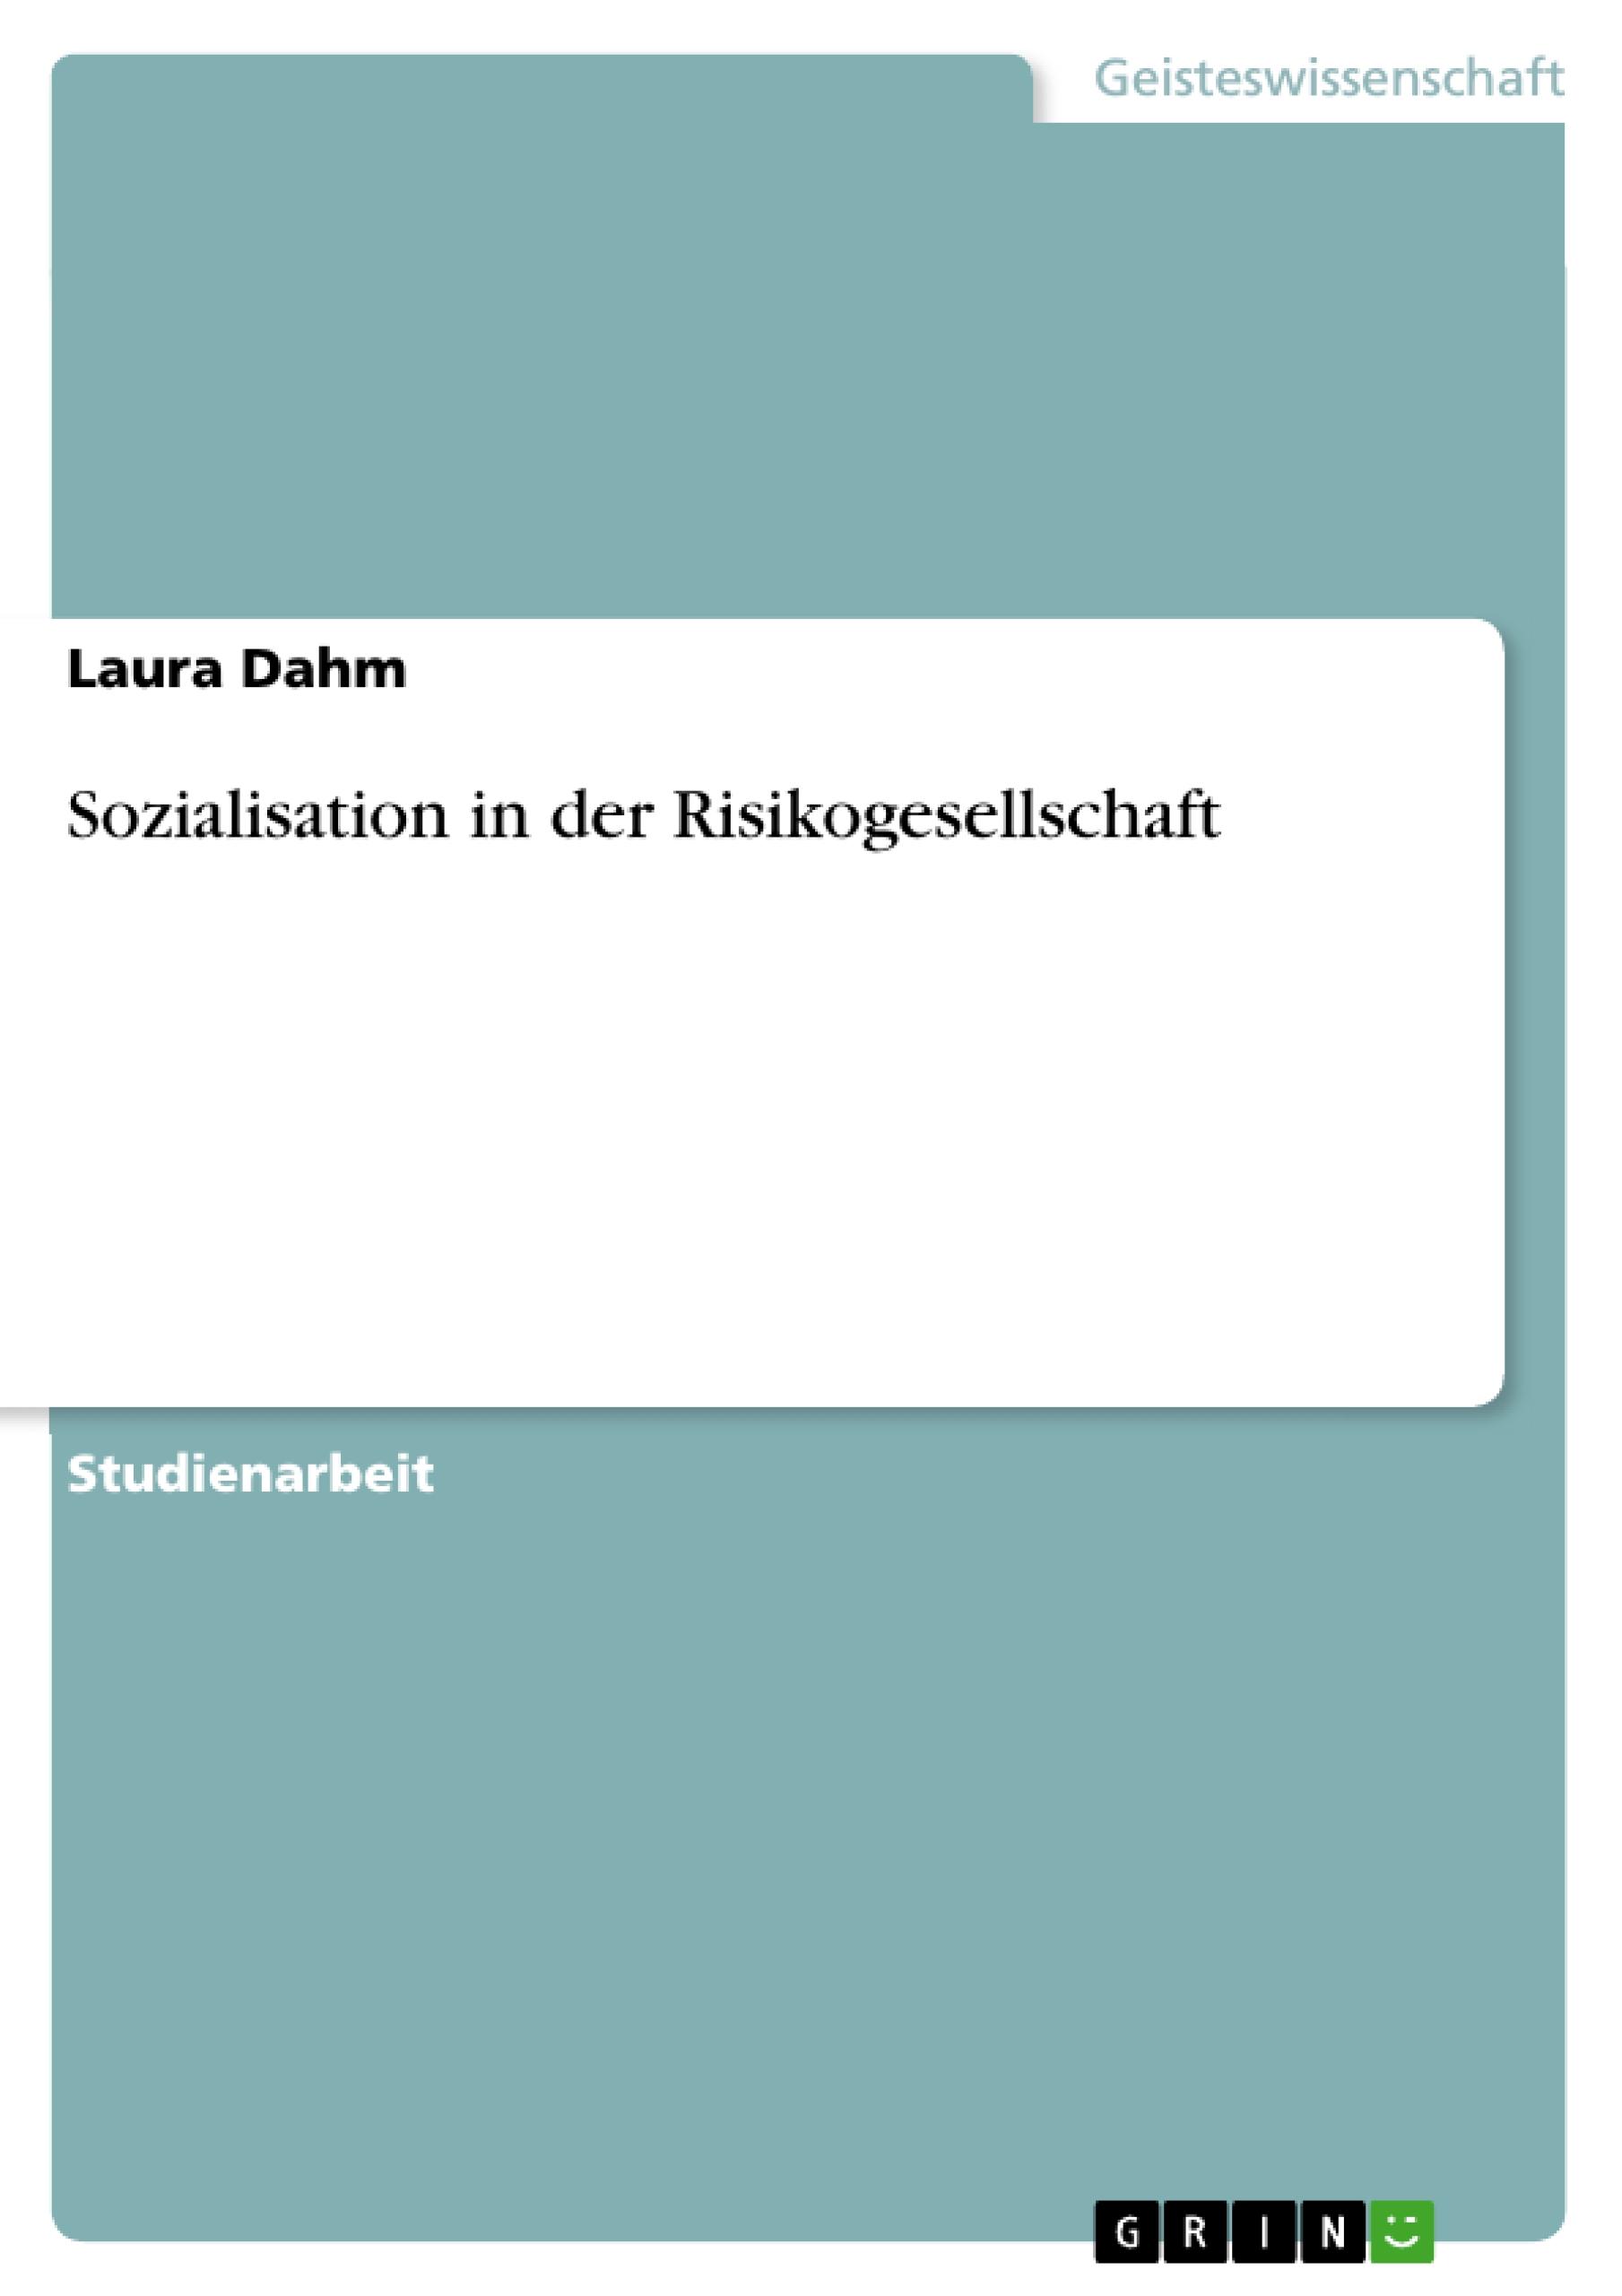 Sozialisation in der Risikogesellschaft - Dahm, Laura